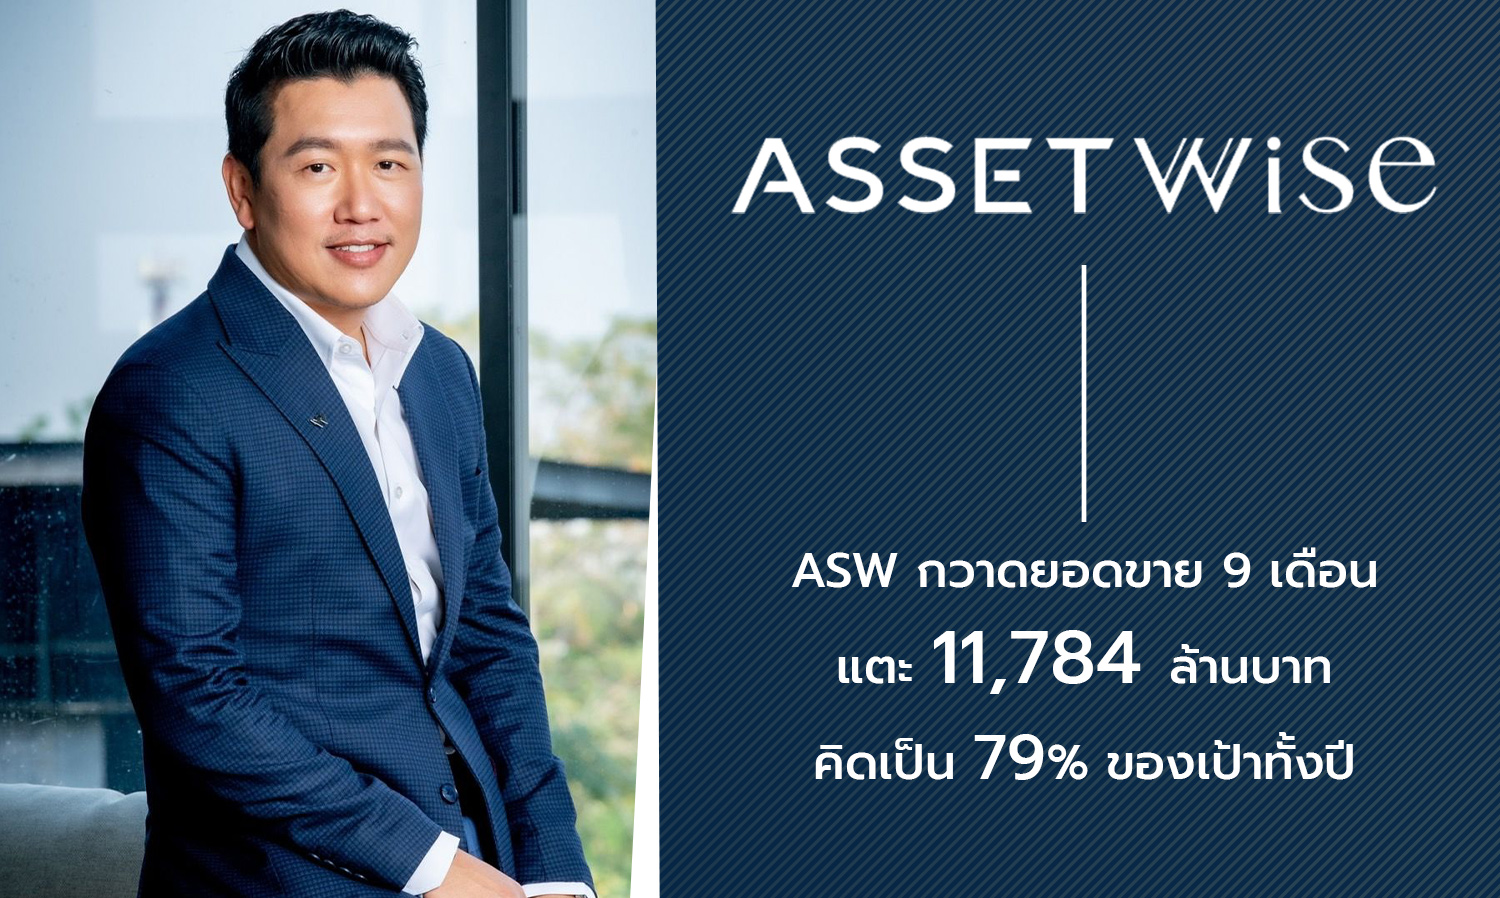 ASW กวาดยอดขาย 9 เดือน แตะ 11,784 ล้านบาท คิดเป็น 79% ของเป้าทั้งปี